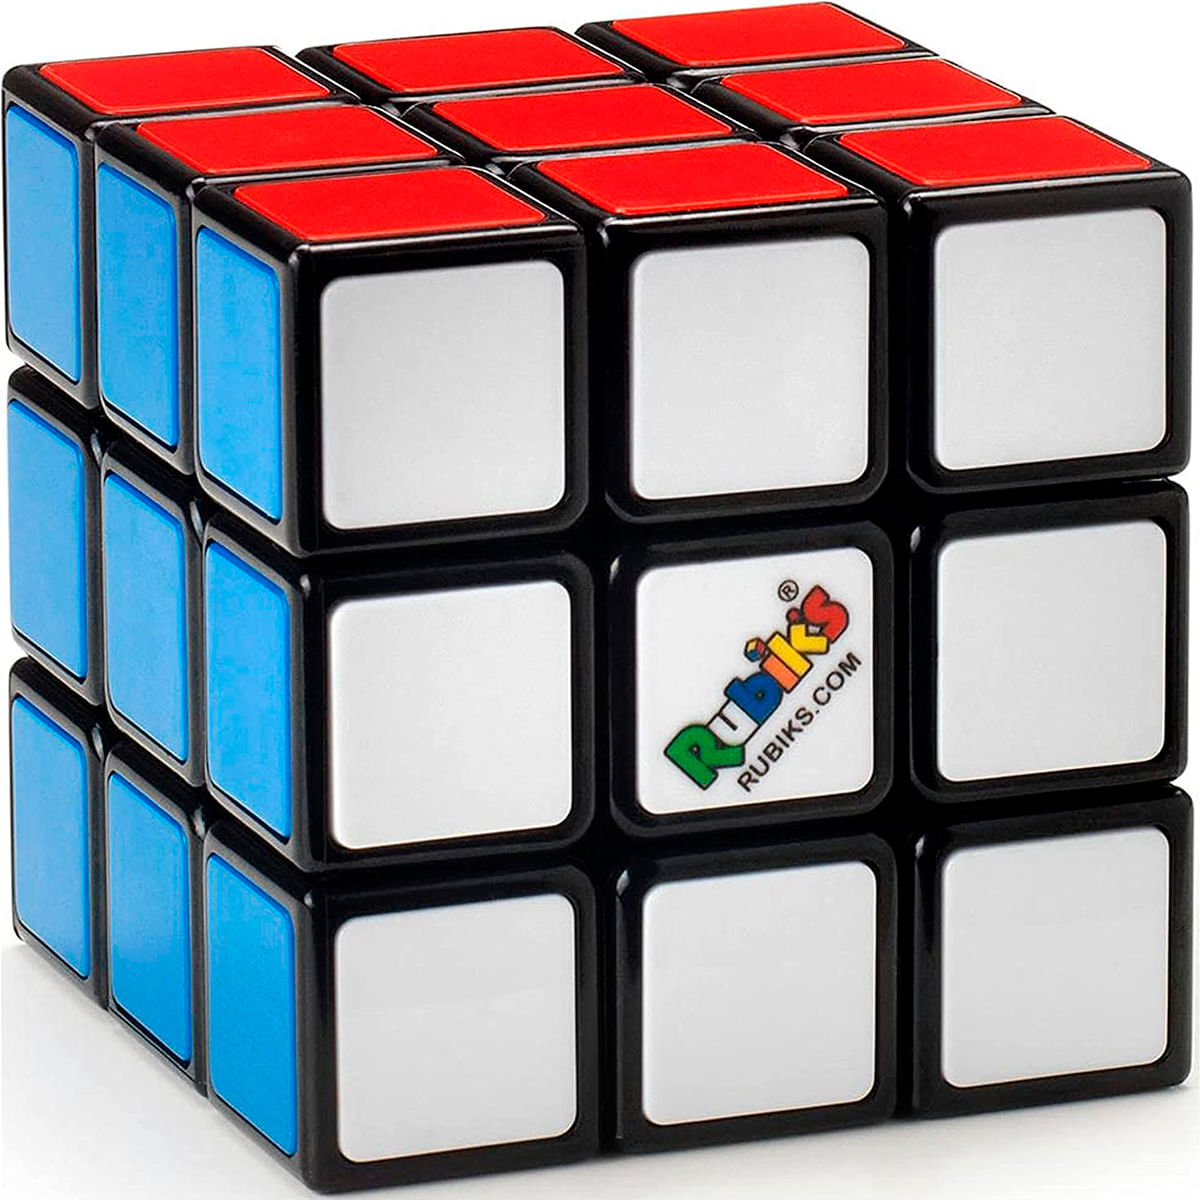 Imagenes De Cubos Rubik Rubik's Cubo 3x3